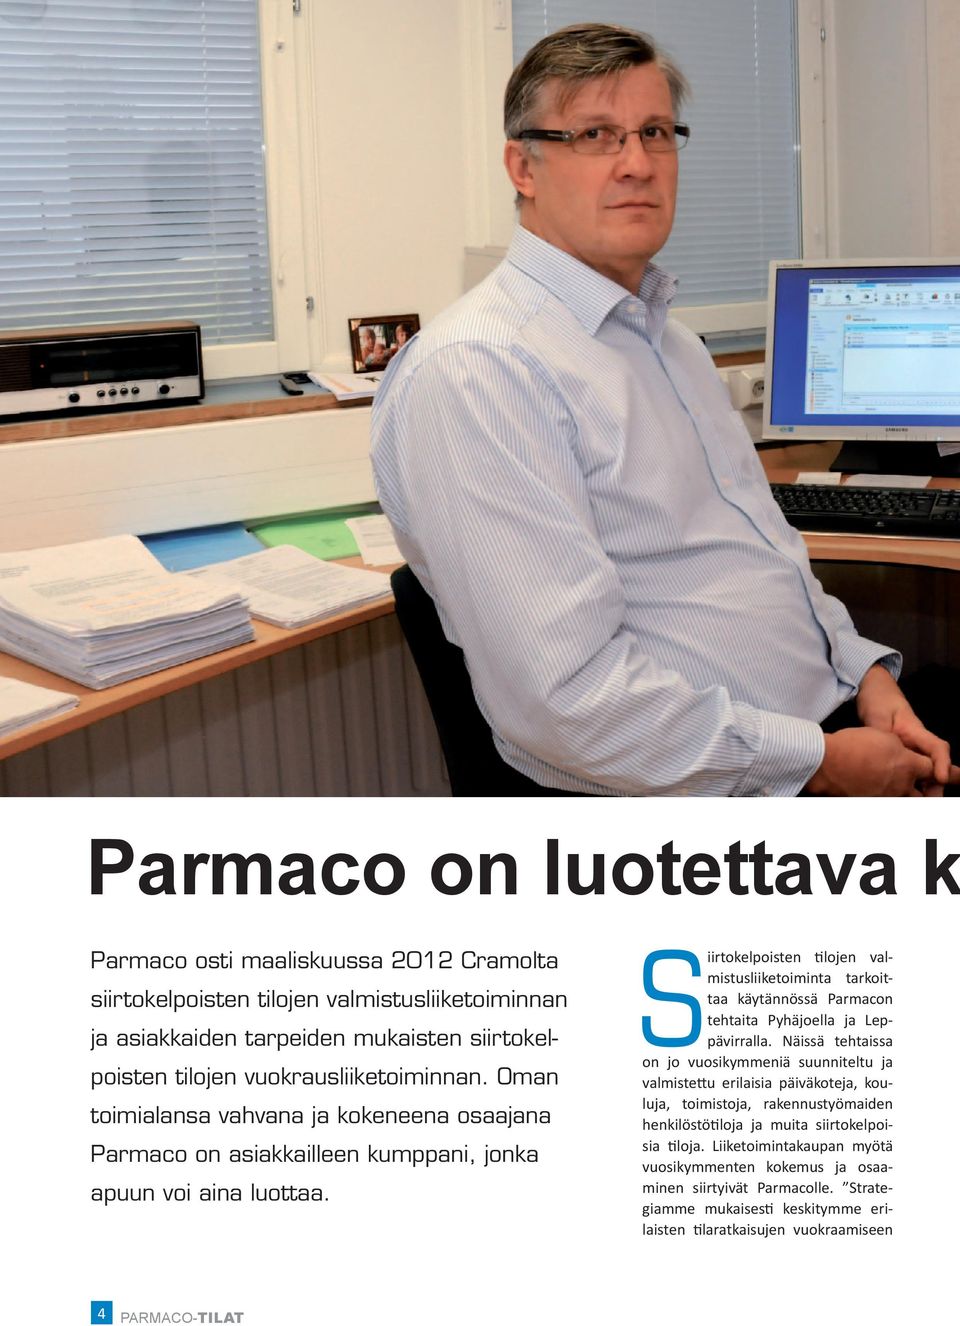 Siirtokelpoisten tilojen valmistusliiketoiminta tarkoittaa käytännössä Parmacon tehtaita Pyhäjoella ja Leppävirralla.